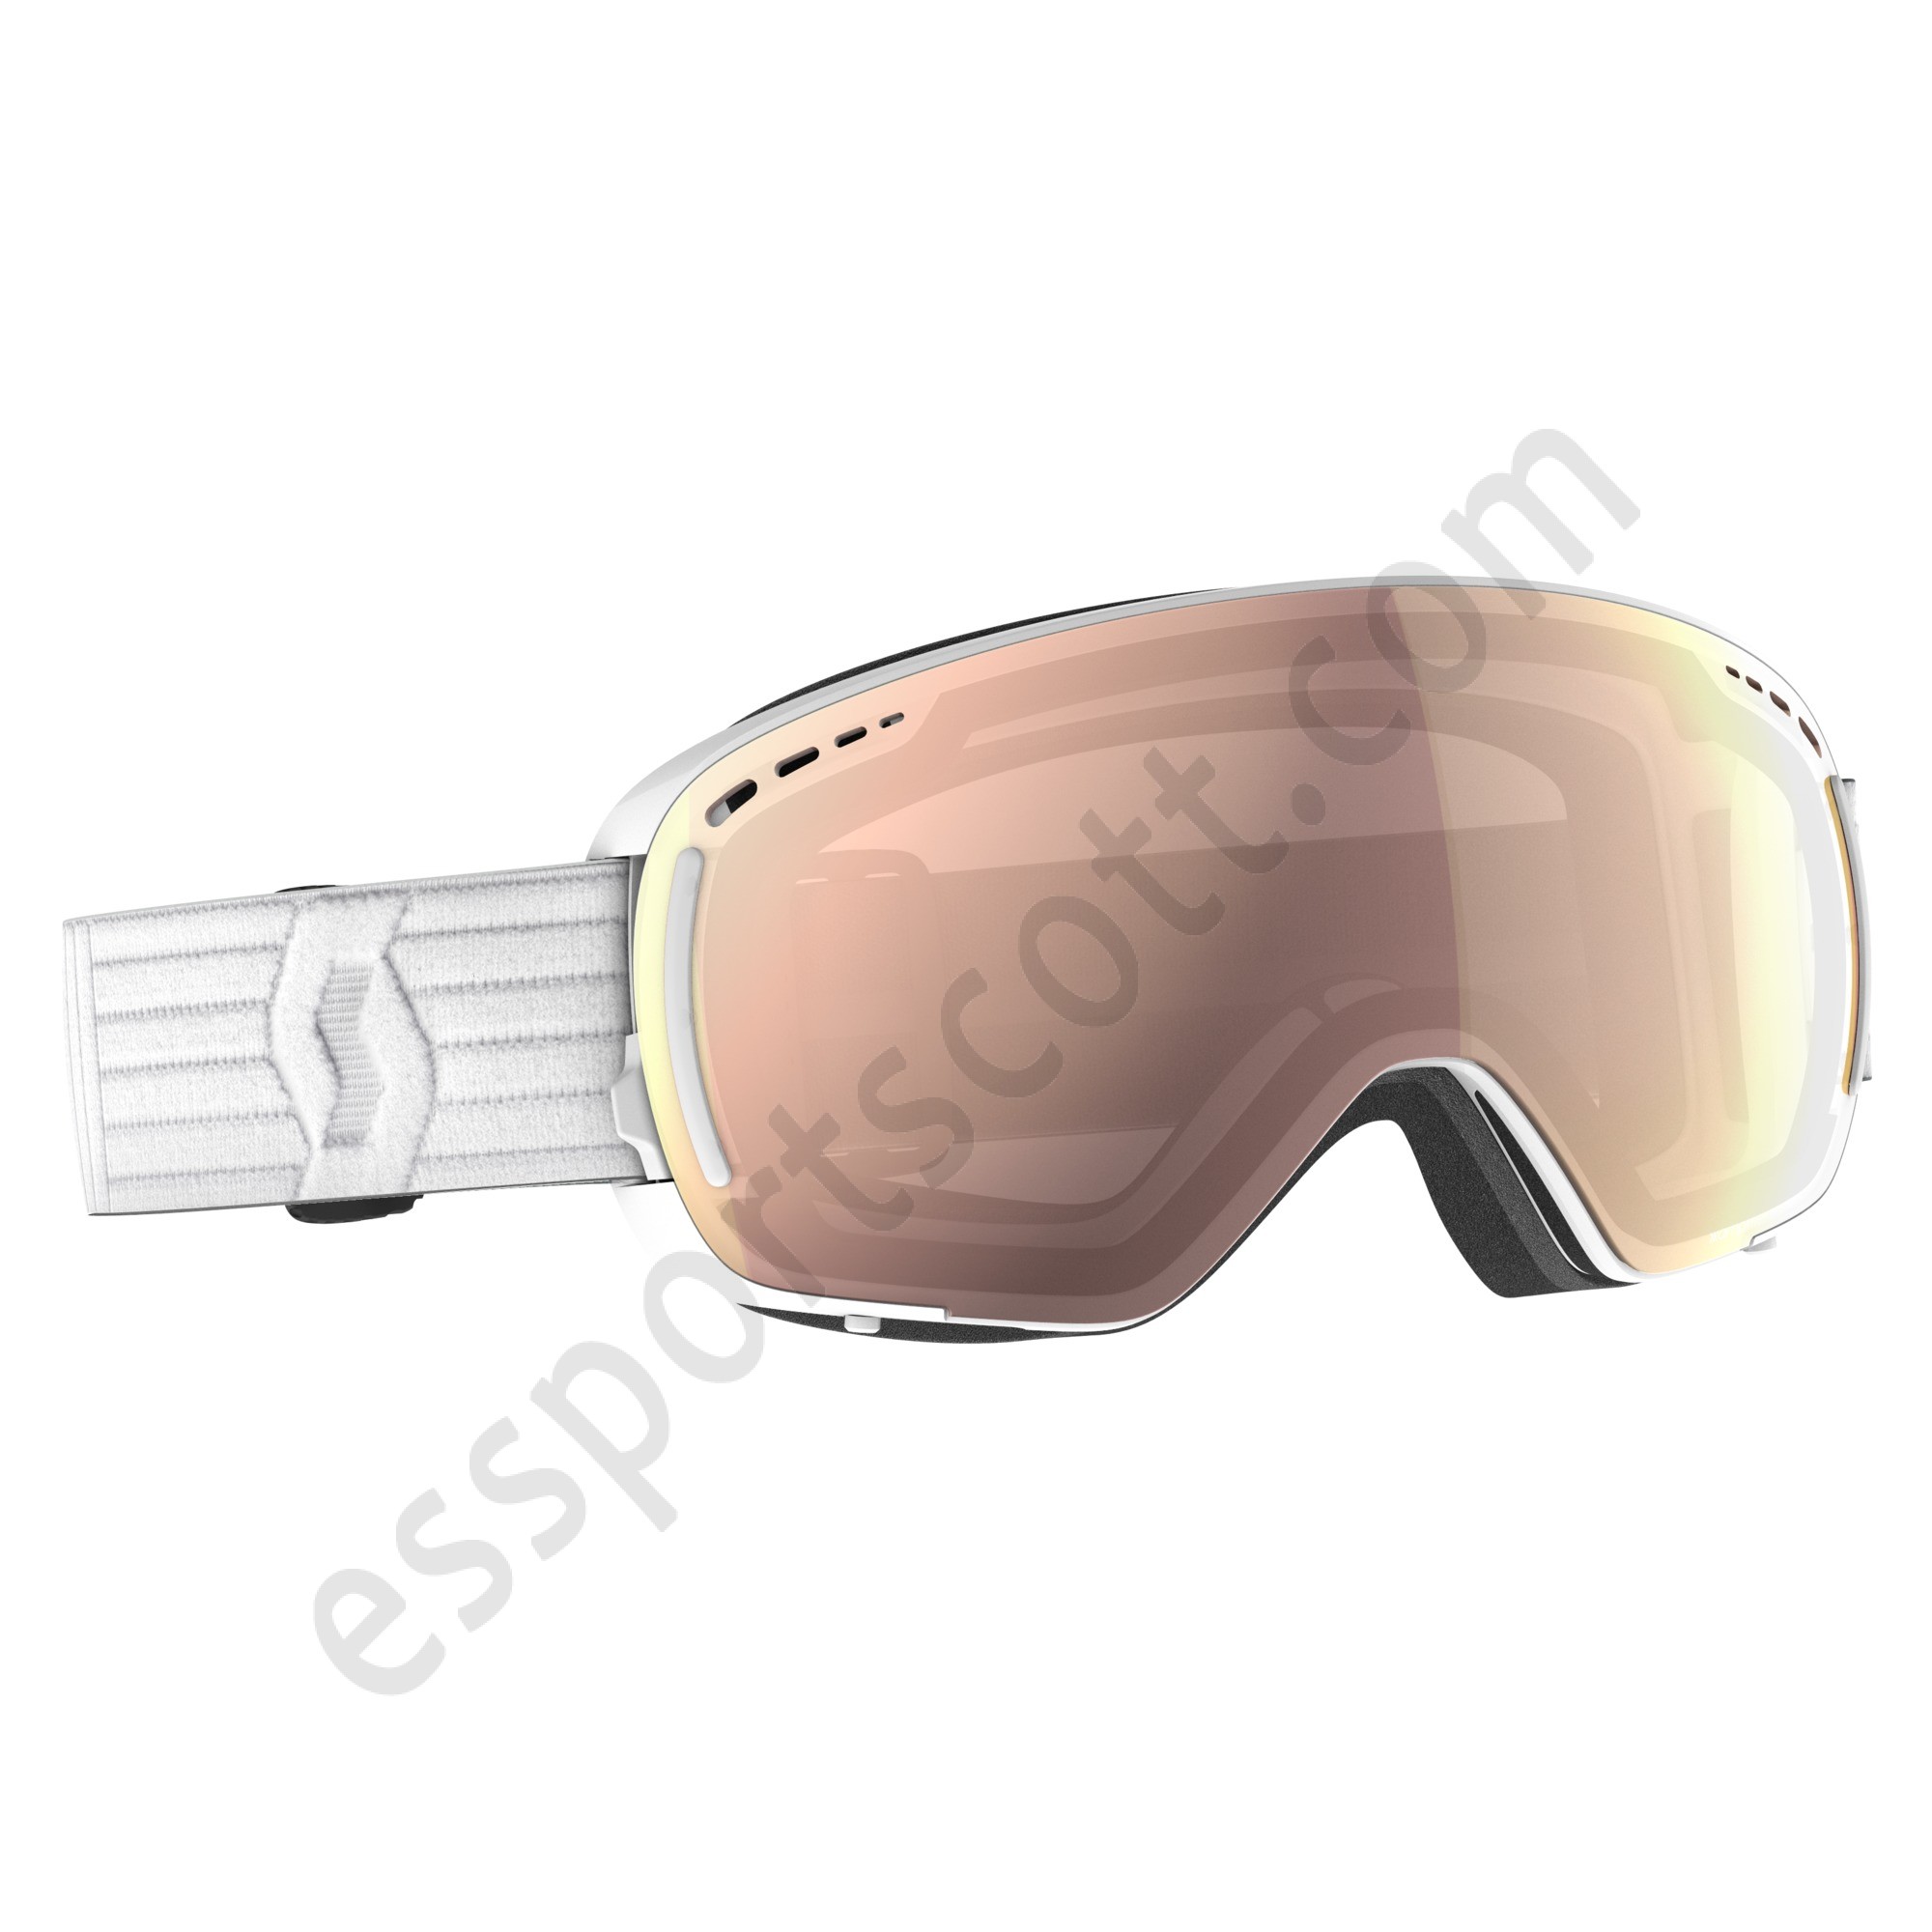 Scott Tienda ◇ LCG Compact Goggle - Scott Tienda ◇ LCG Compact Goggle